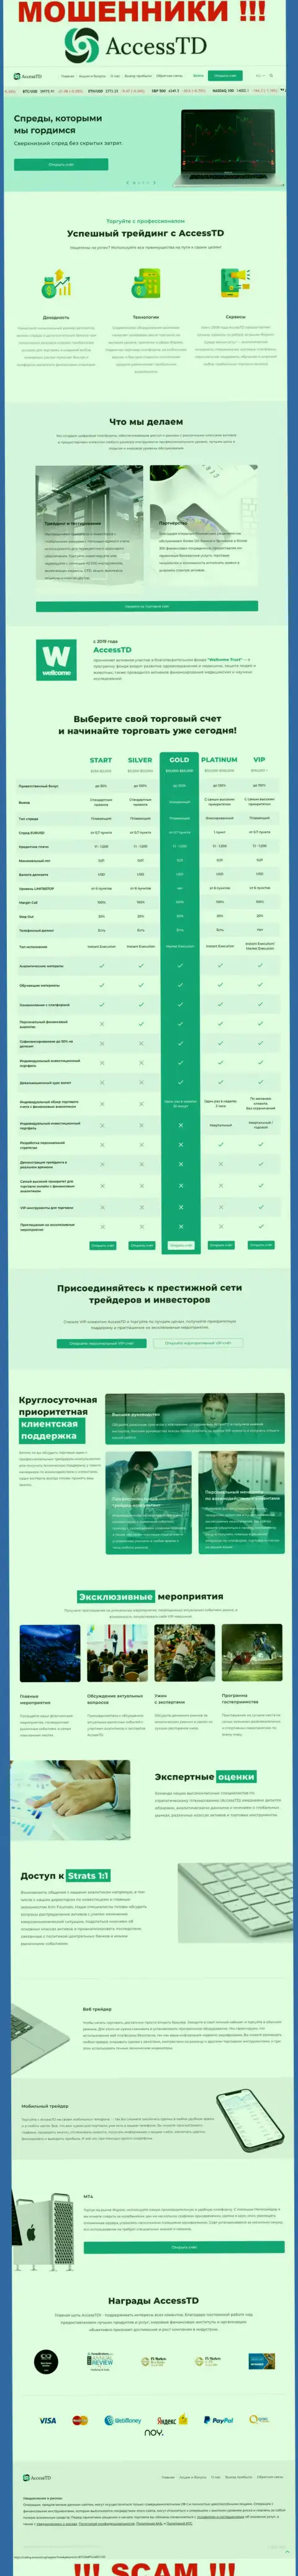 Ложь на страничках информационного сервиса мошенников АссессТД